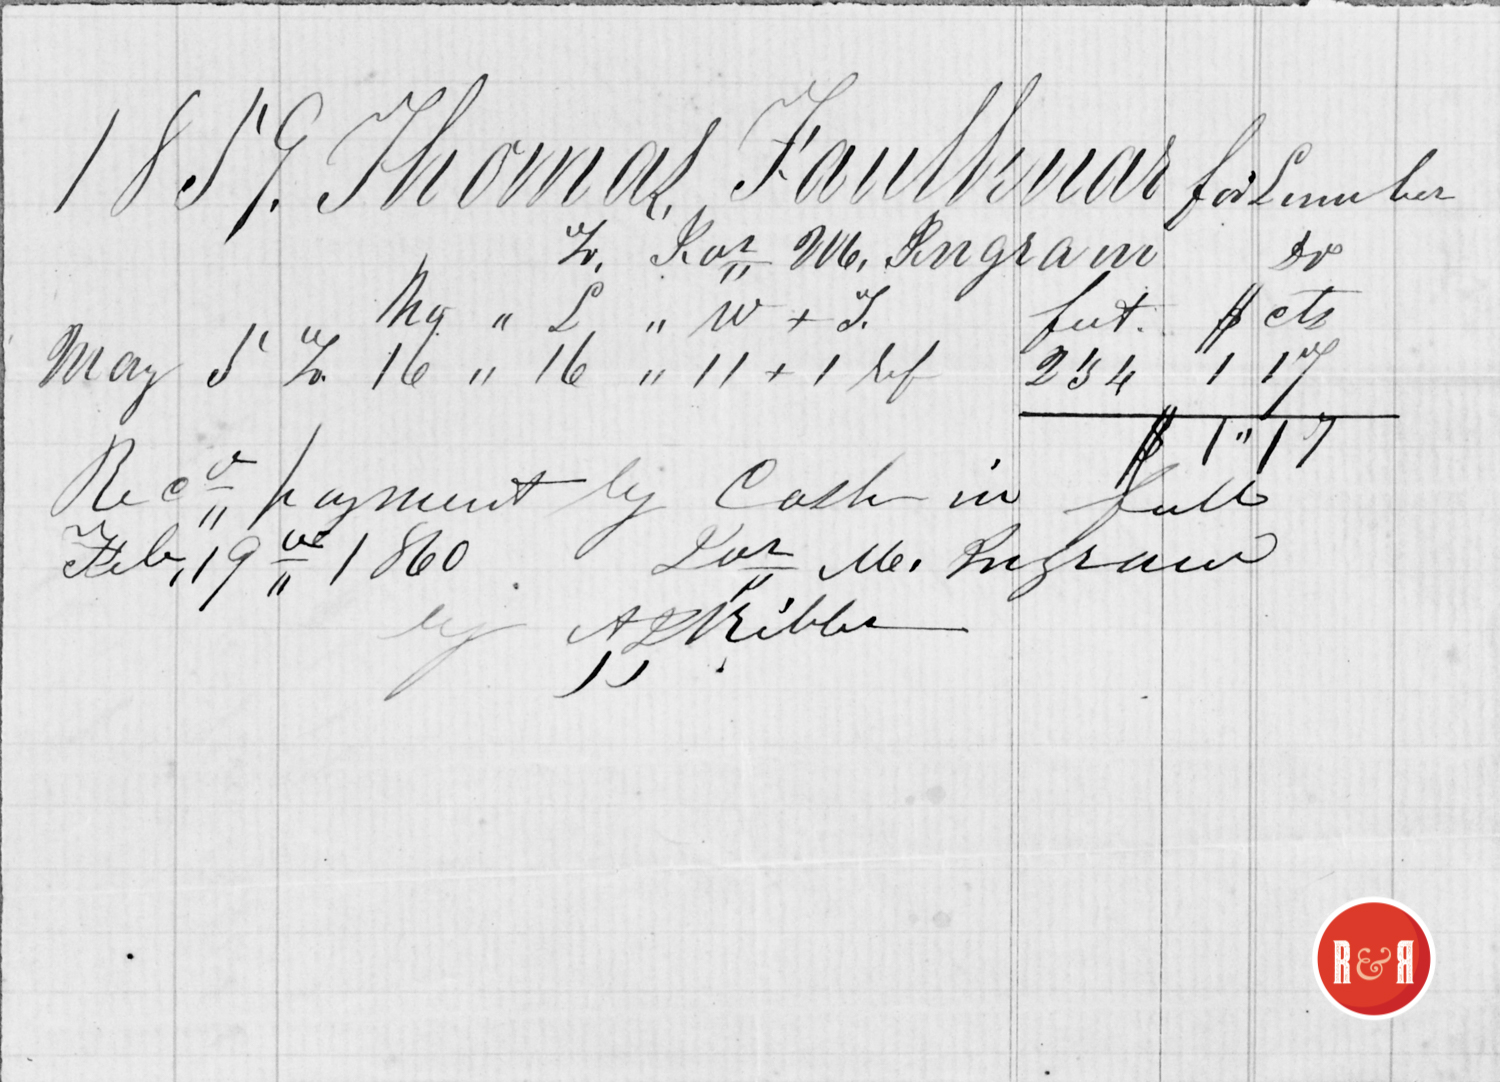 LUMBER PURCHASED VIA JAMES M. INGRAM (MILLER IN LANCASTER CO SC) - 1859